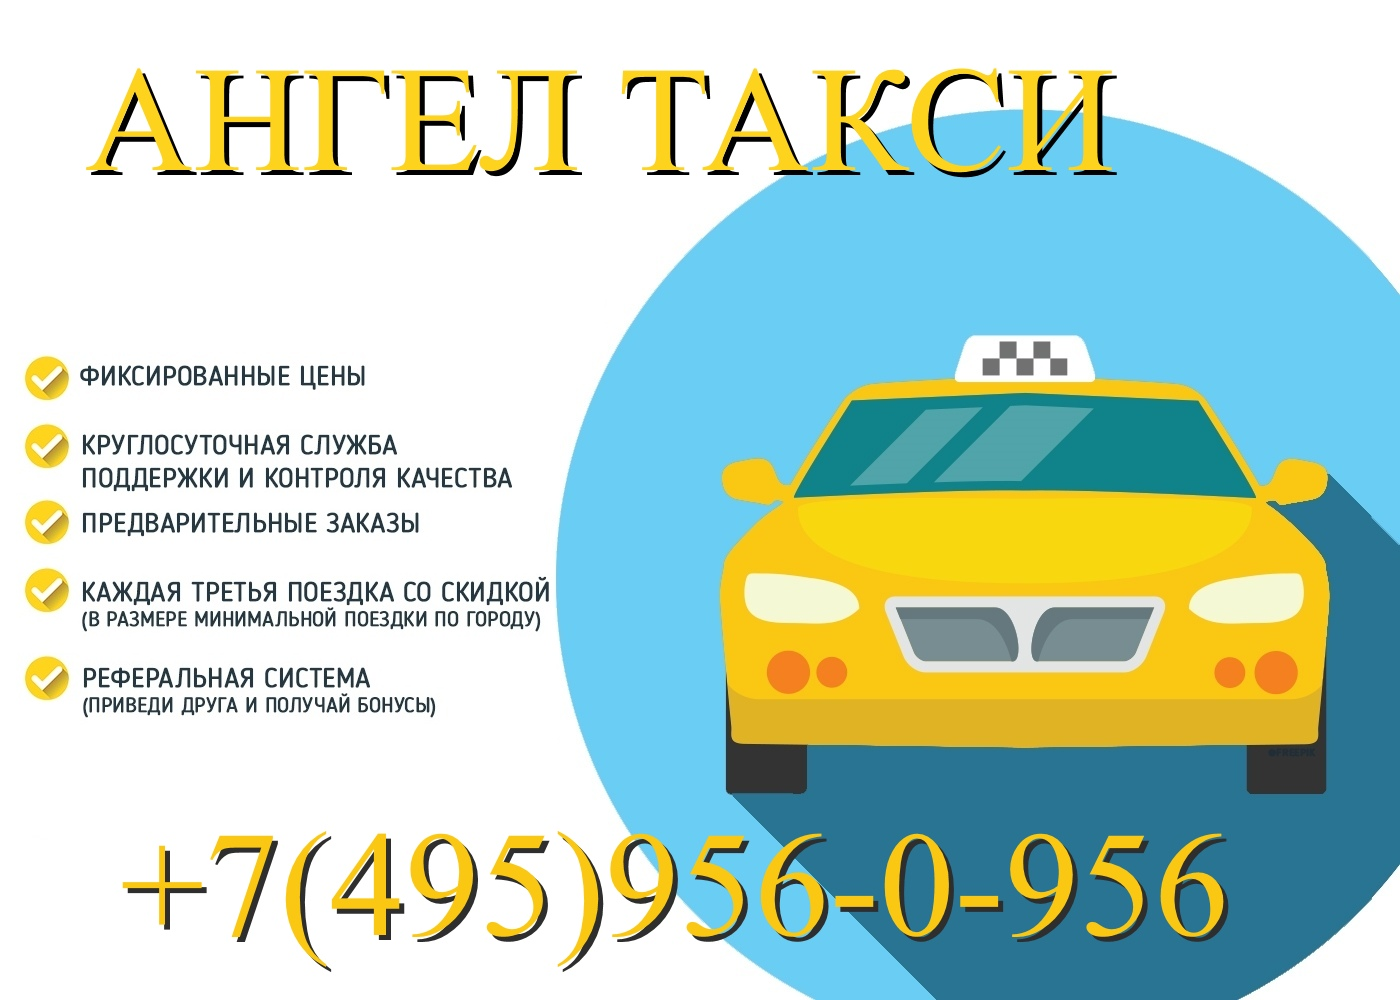 Нужны заказы на такси. Визитка такси. Такси ангел. Реклама такси. Междугородние поездки такси.